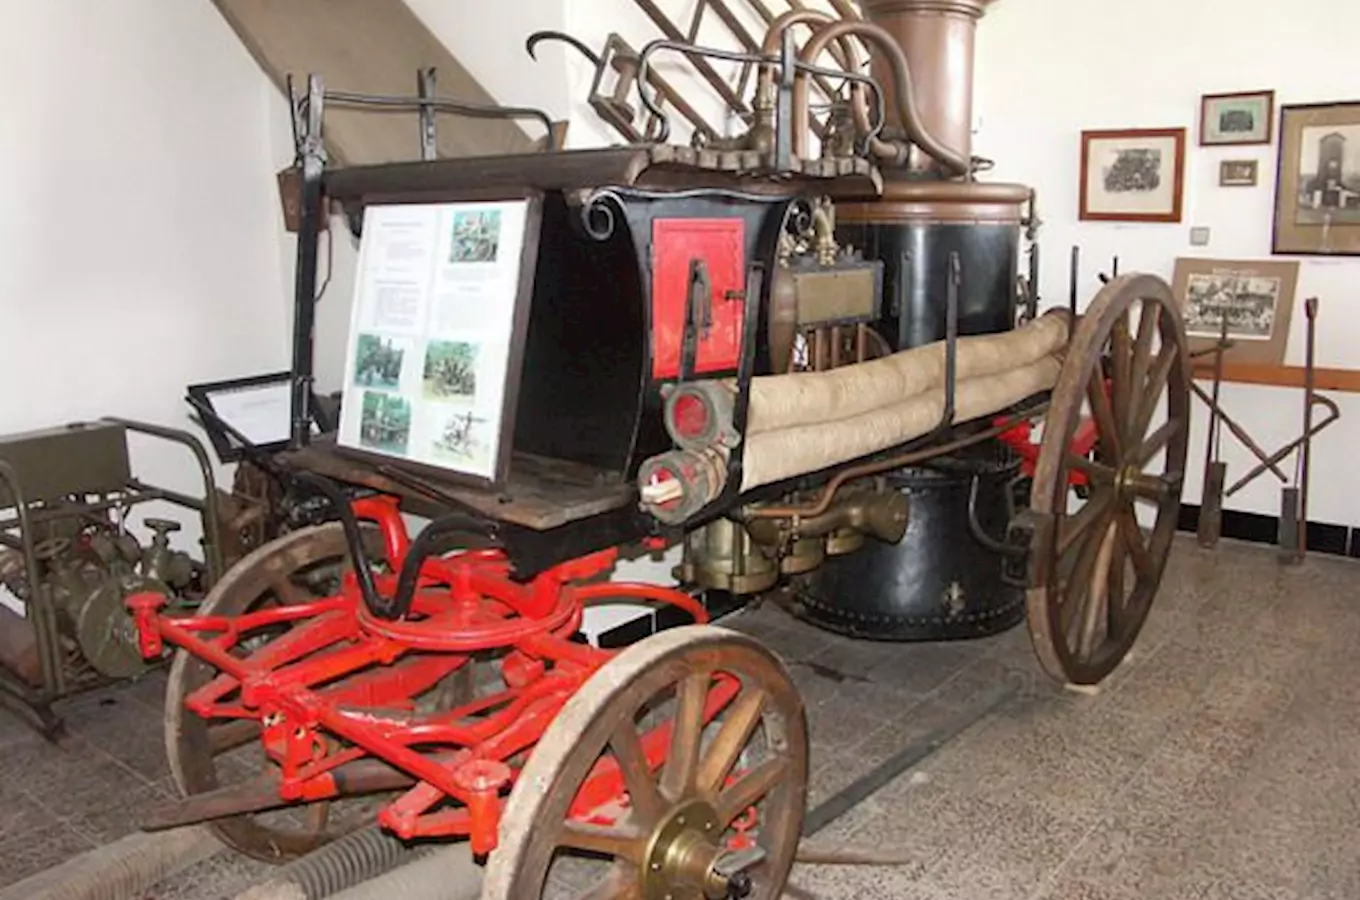 Muzeum historické hasičské techniky Velké Svatoňovice